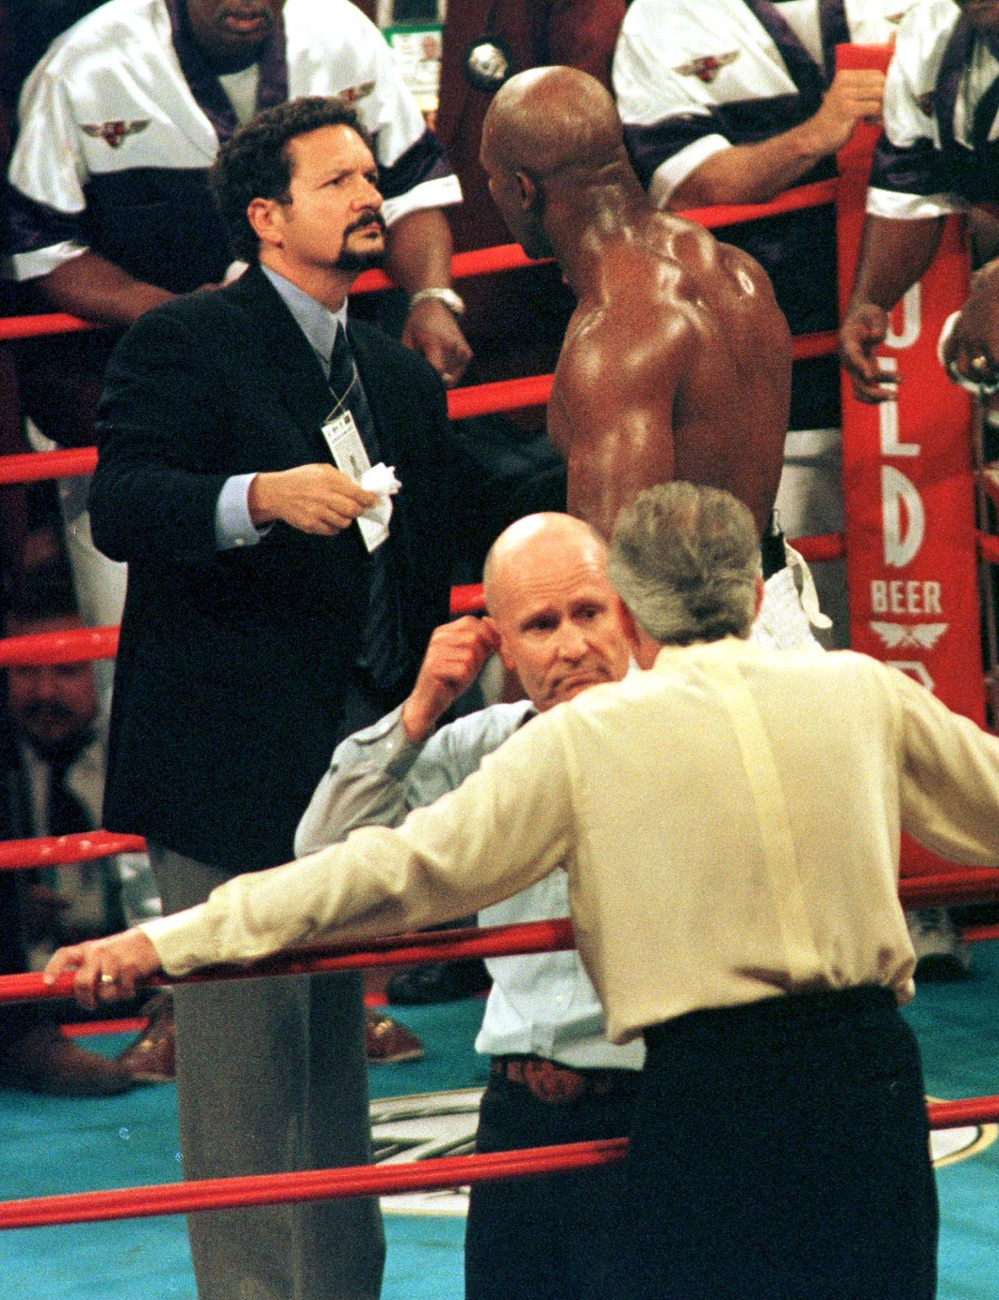 Rendőrök fogják vissza Tysont, miután a bíró őt leléptette és Holyfieldet hirdette ki győztesnek.